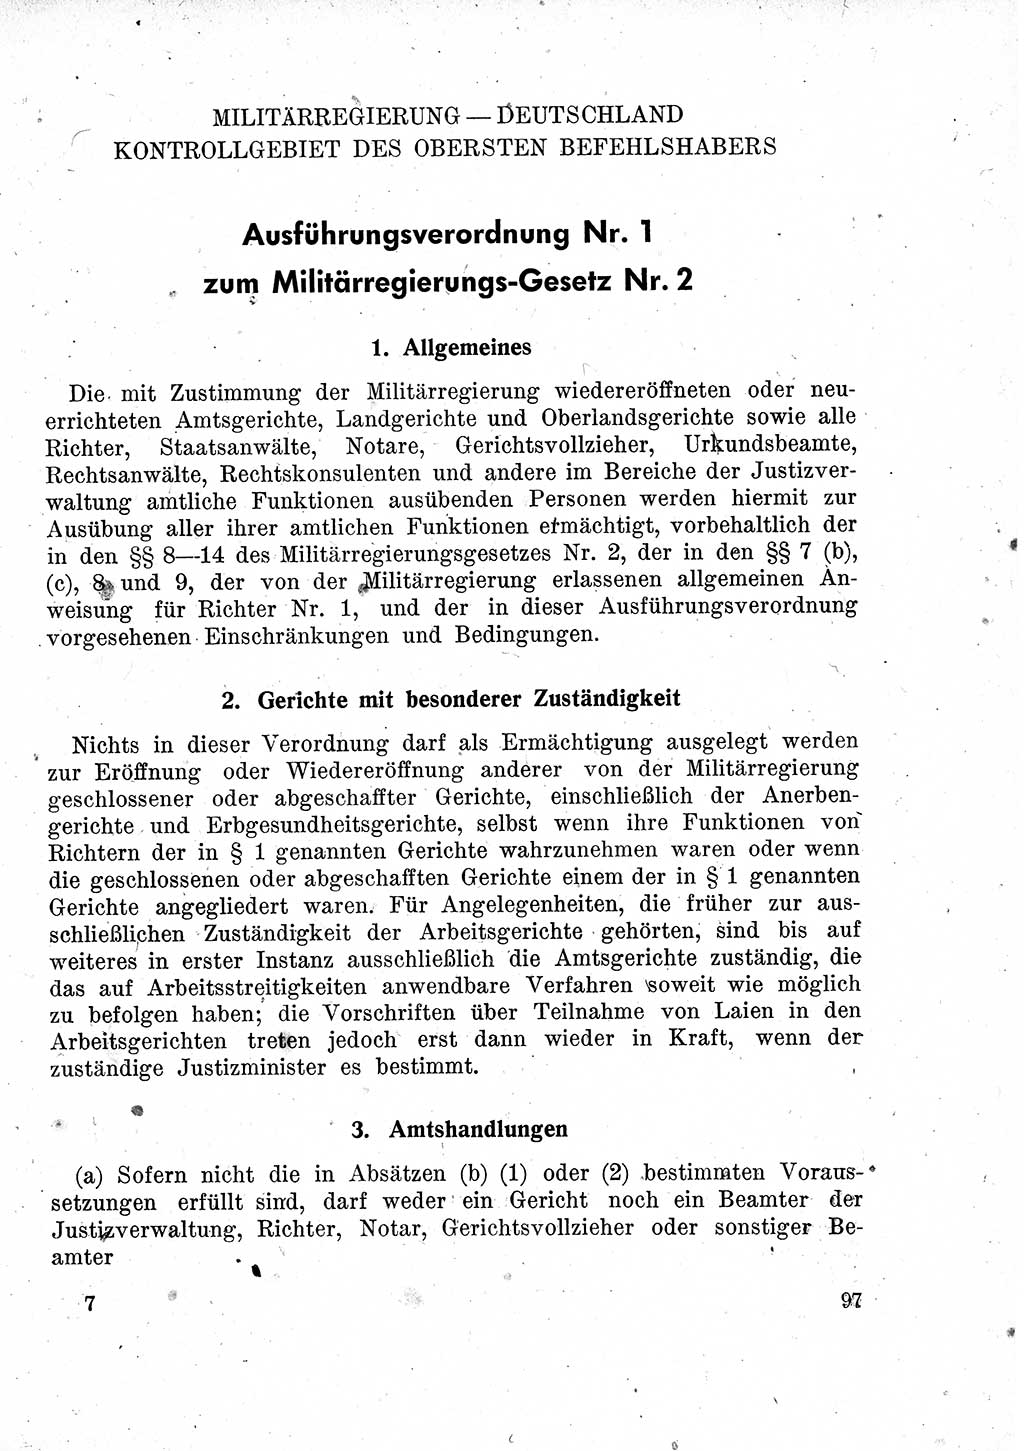 Das Recht der Besatzungsmacht (Deutschland), Proklamationen, Deklerationen, Verordnungen, Gesetze und Bekanntmachungen 1947, Seite 97 (R. Bes. Dtl. 1947, S. 97)